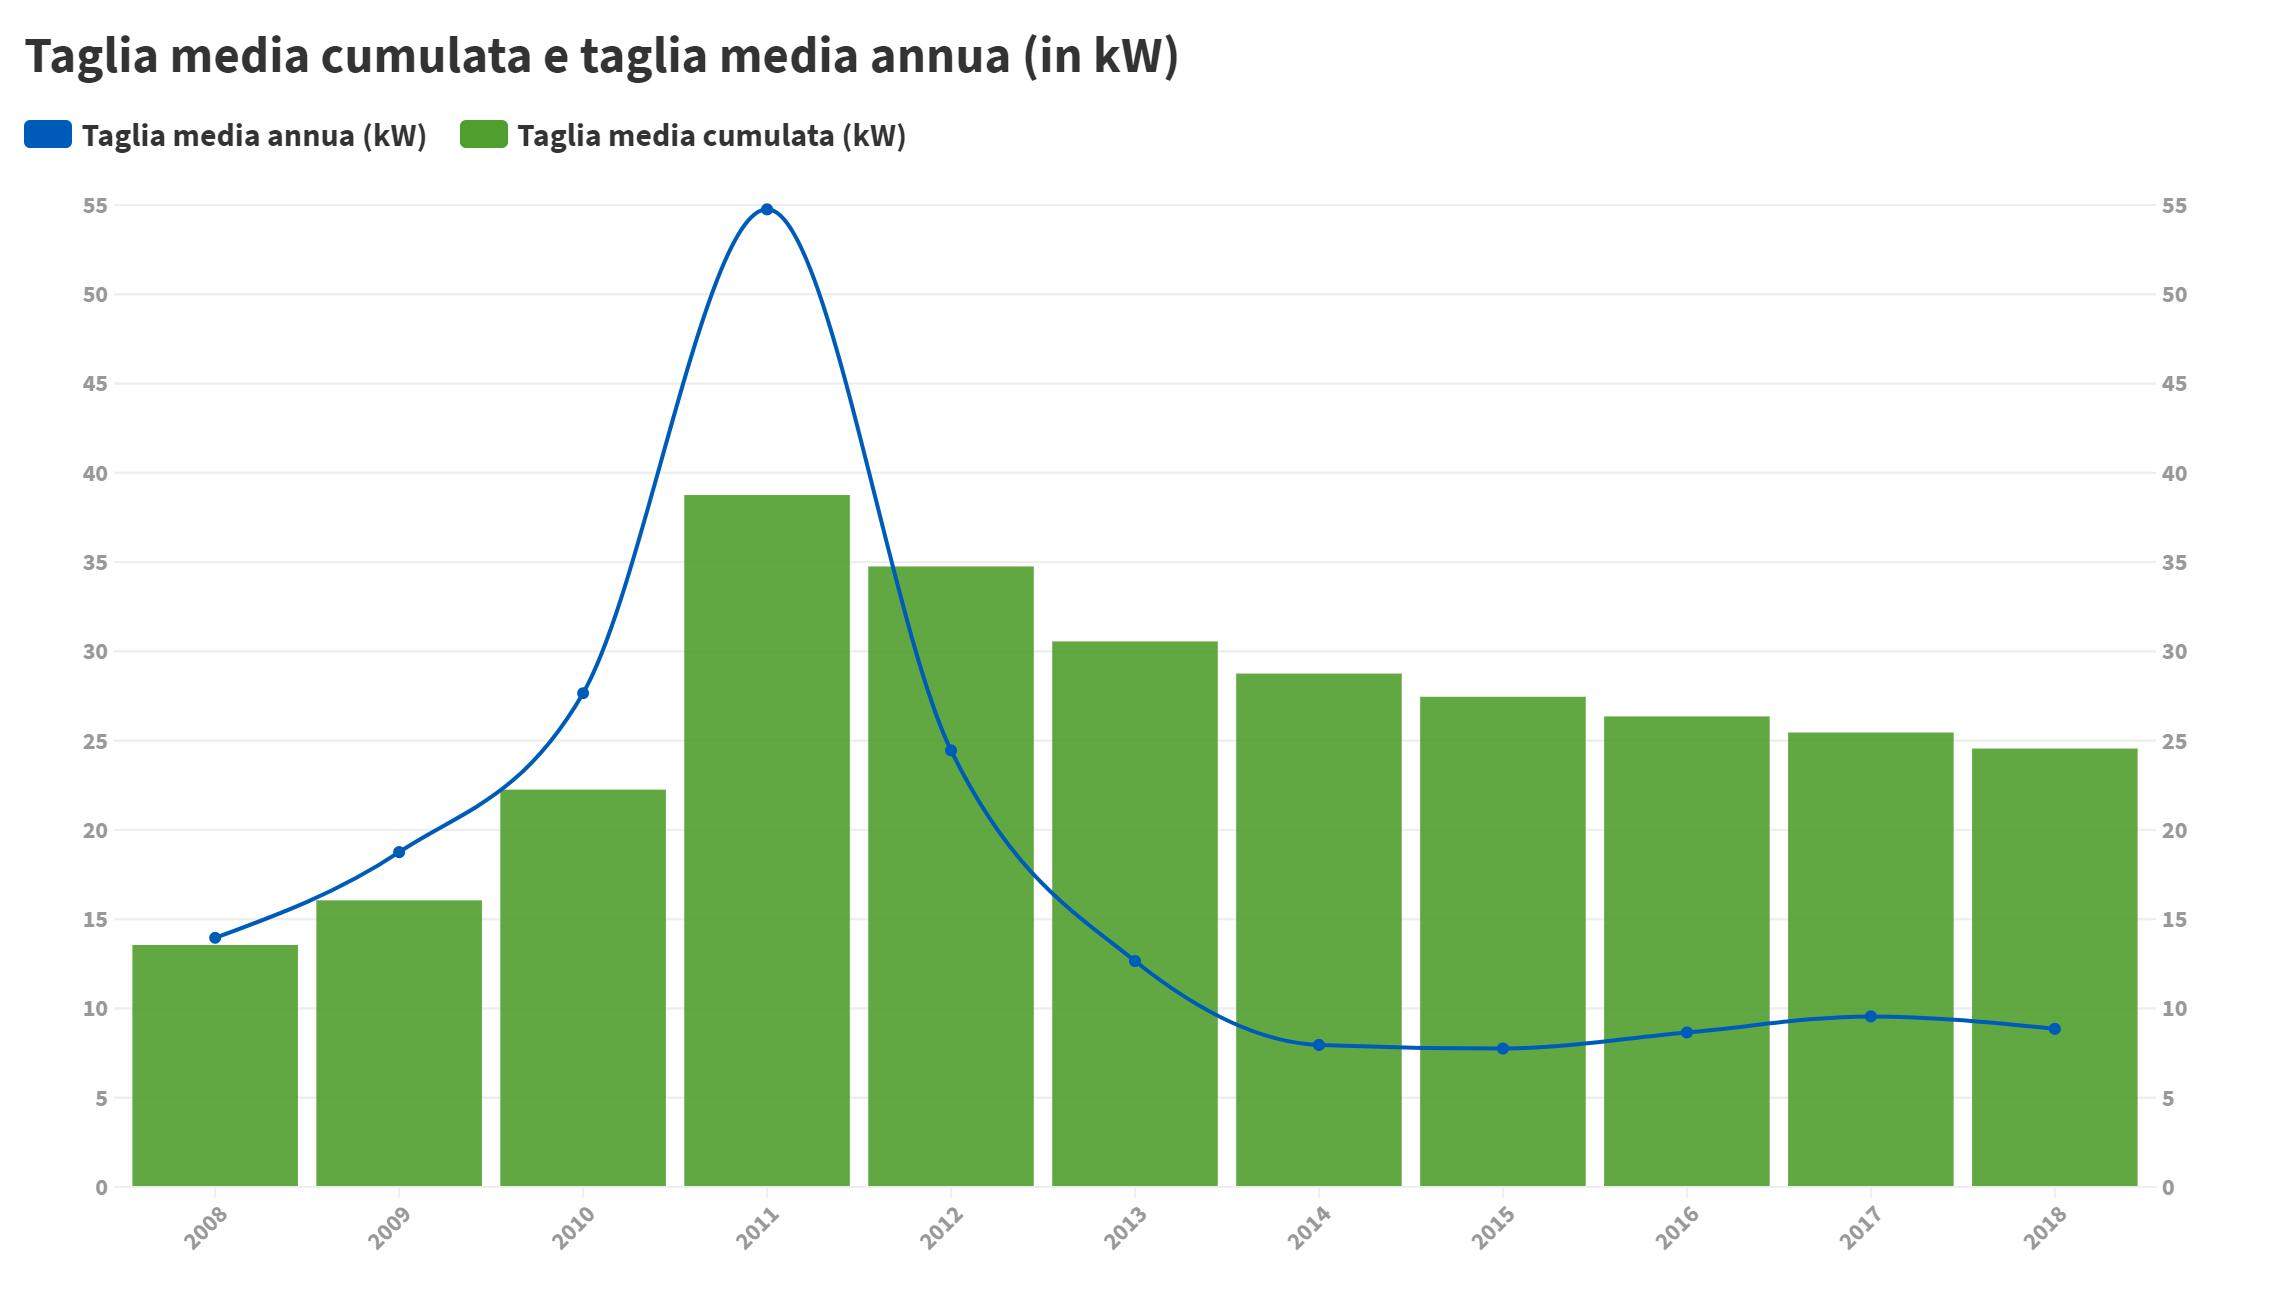 Media Annua sulla taglia degli impianti Fotovoltaici